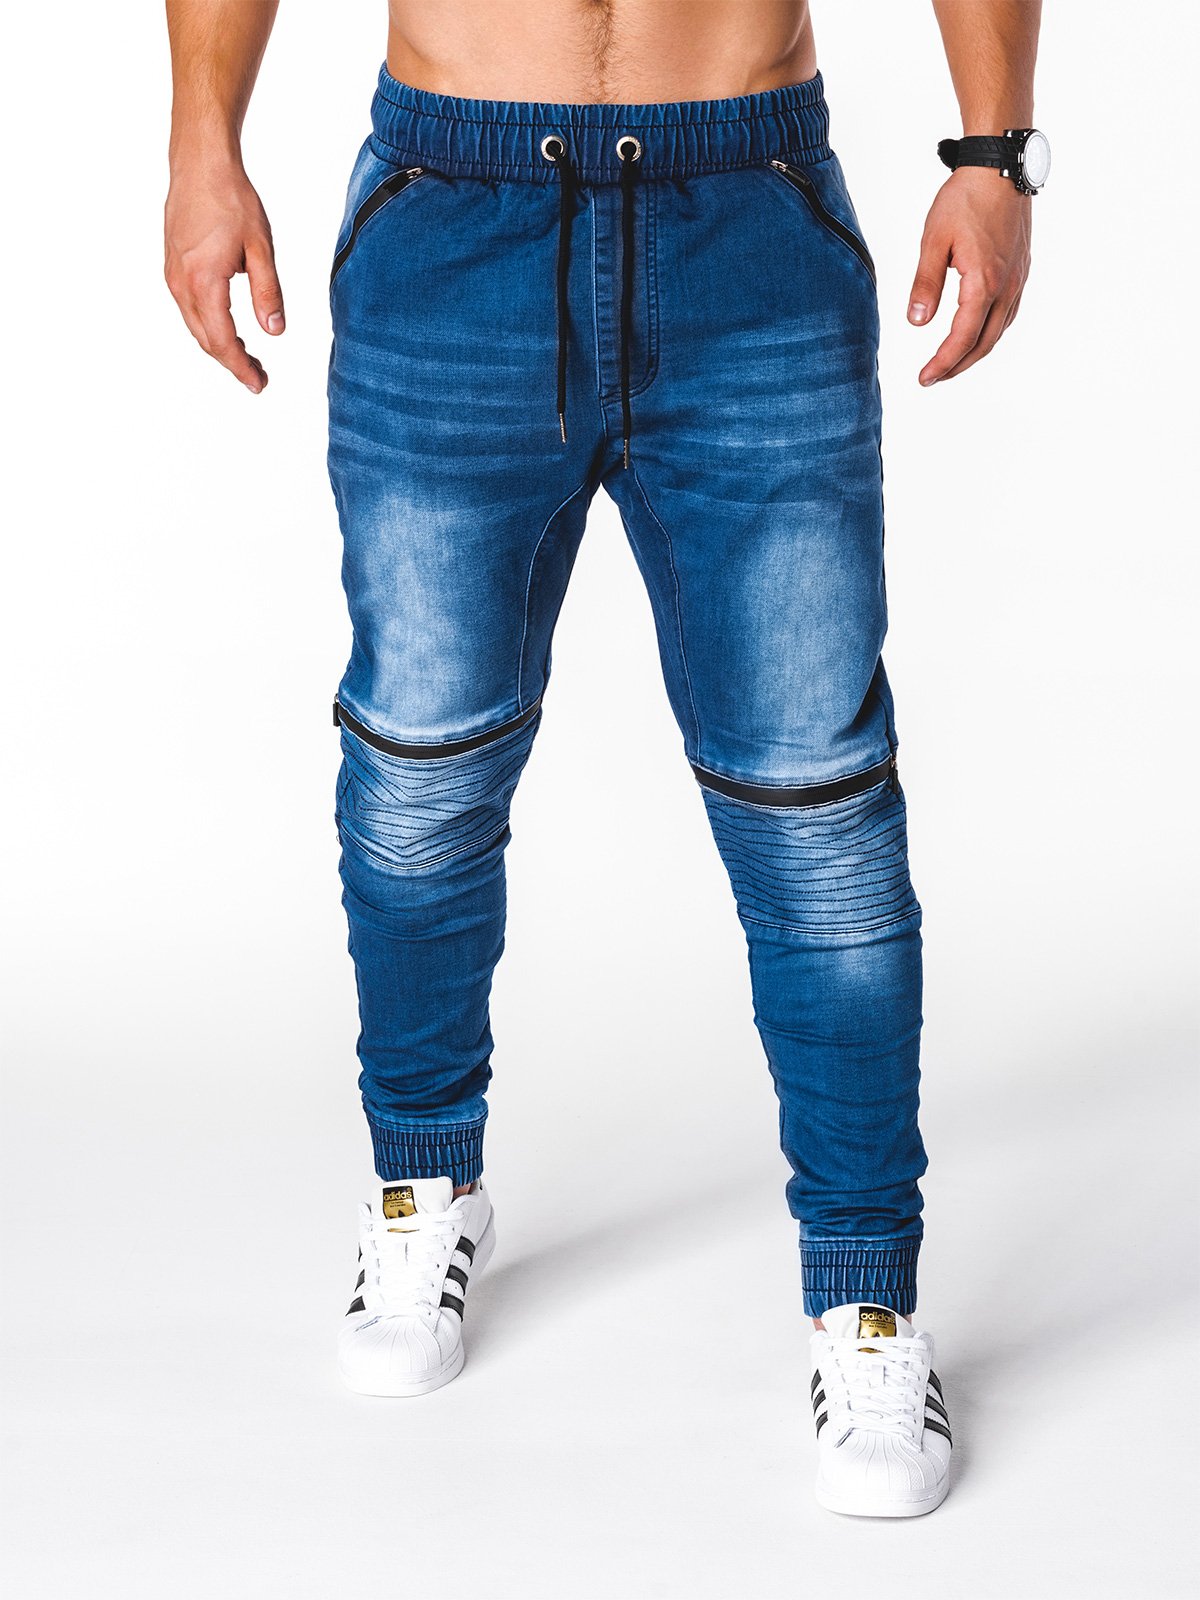 Men's jeans joggers P651 - blue | MODONE wholesale - Clothing For Men